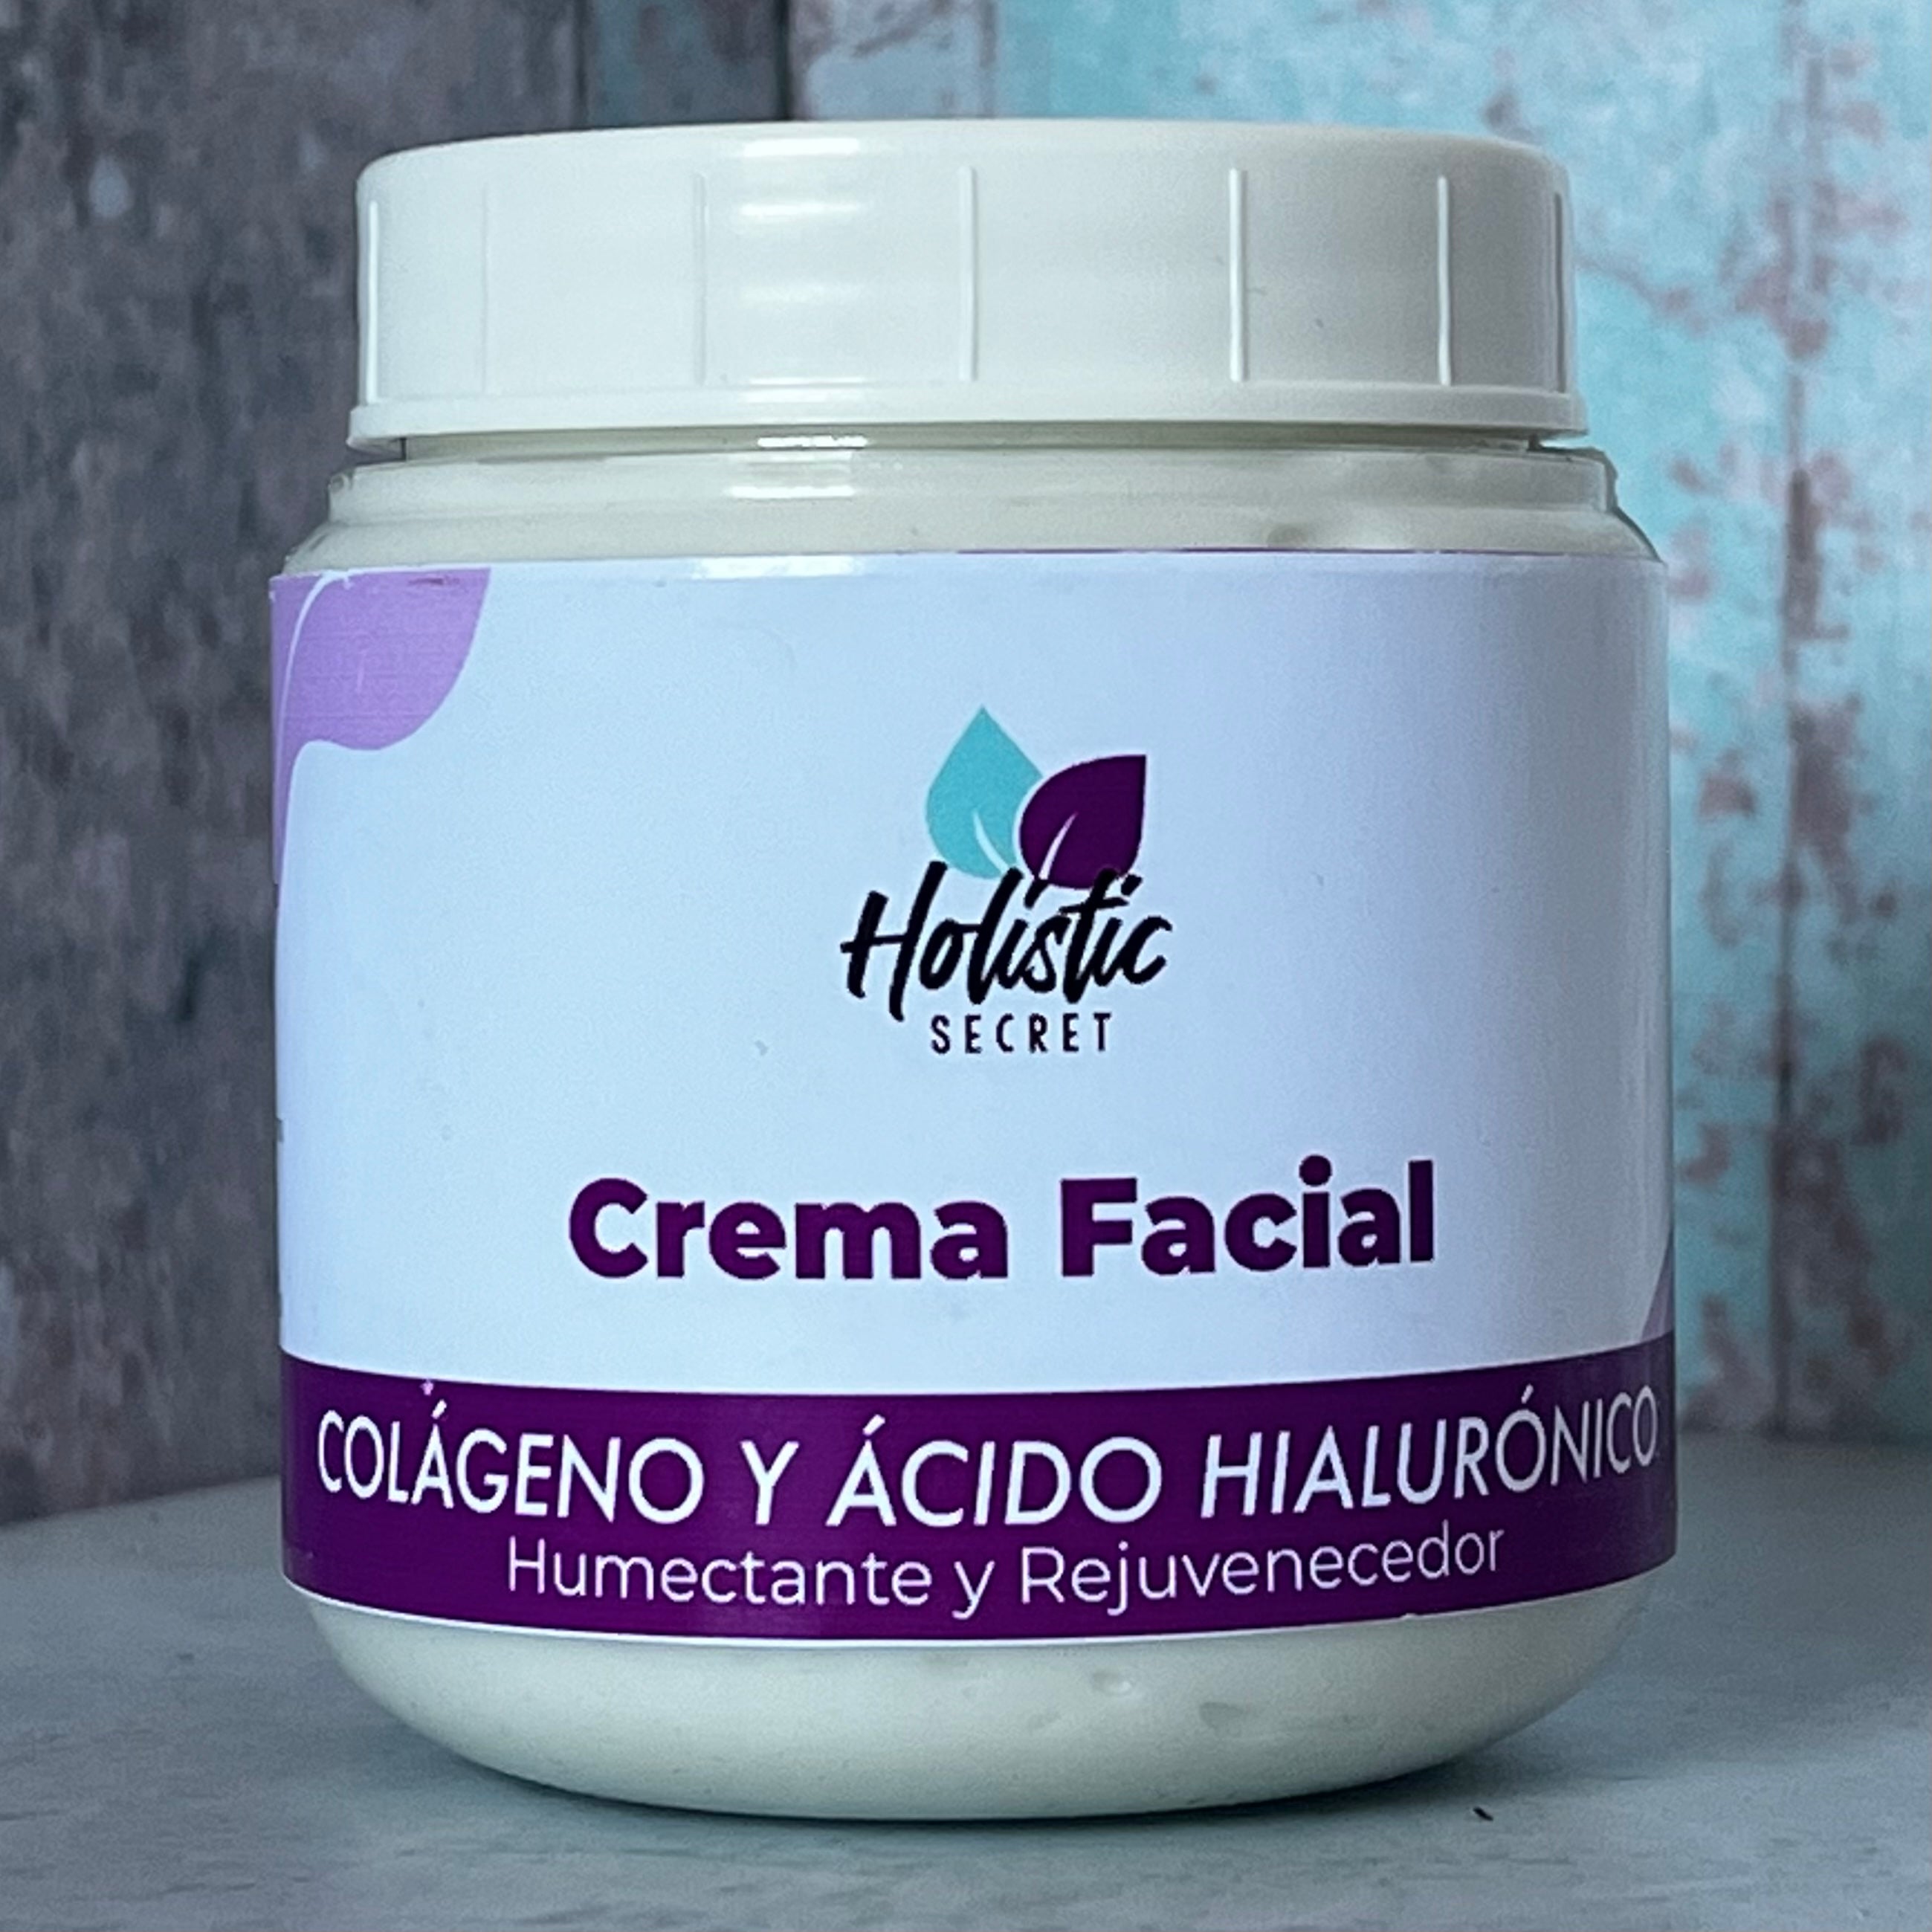 Crema facial Colágeno y Ácido Hialurónico Holistic Secret